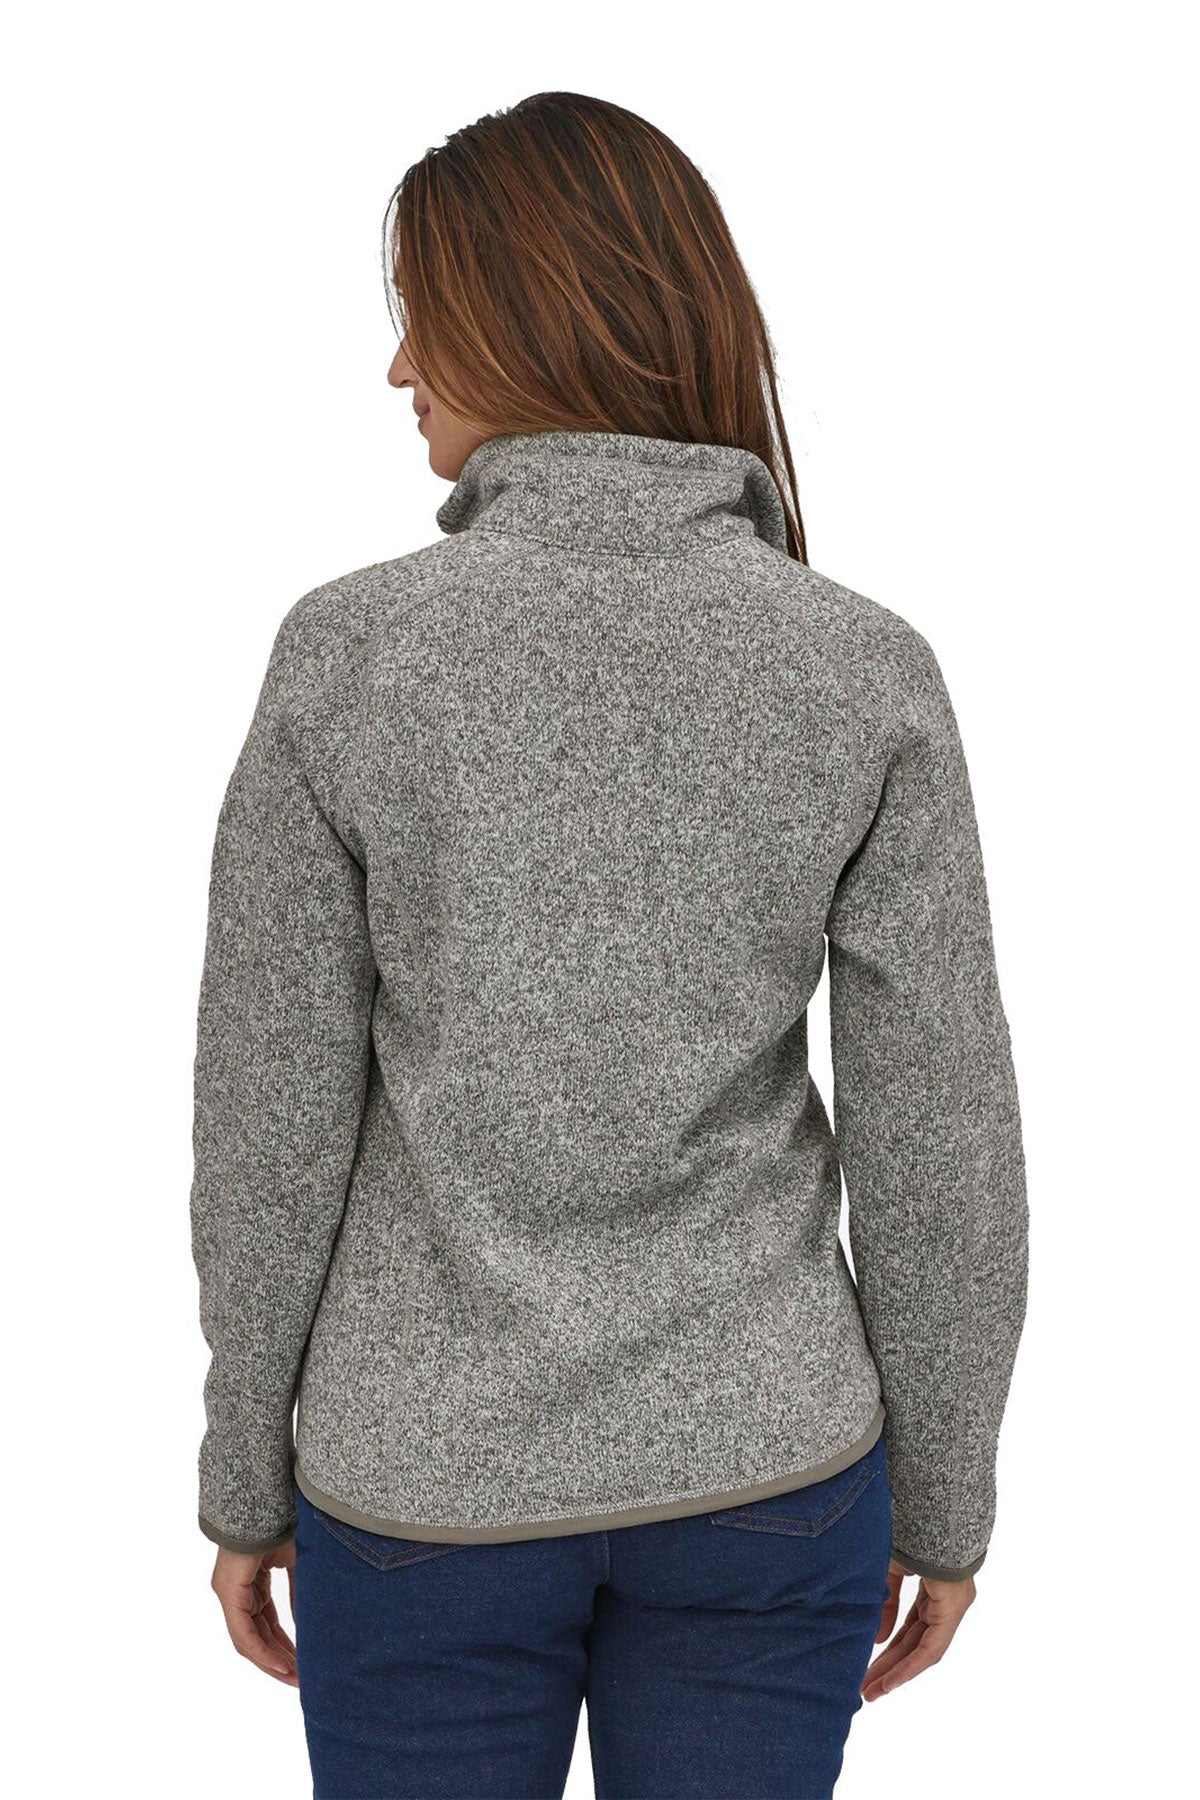 Patagonia Womens Better Sweater Custom Quarter Zips, Birch White